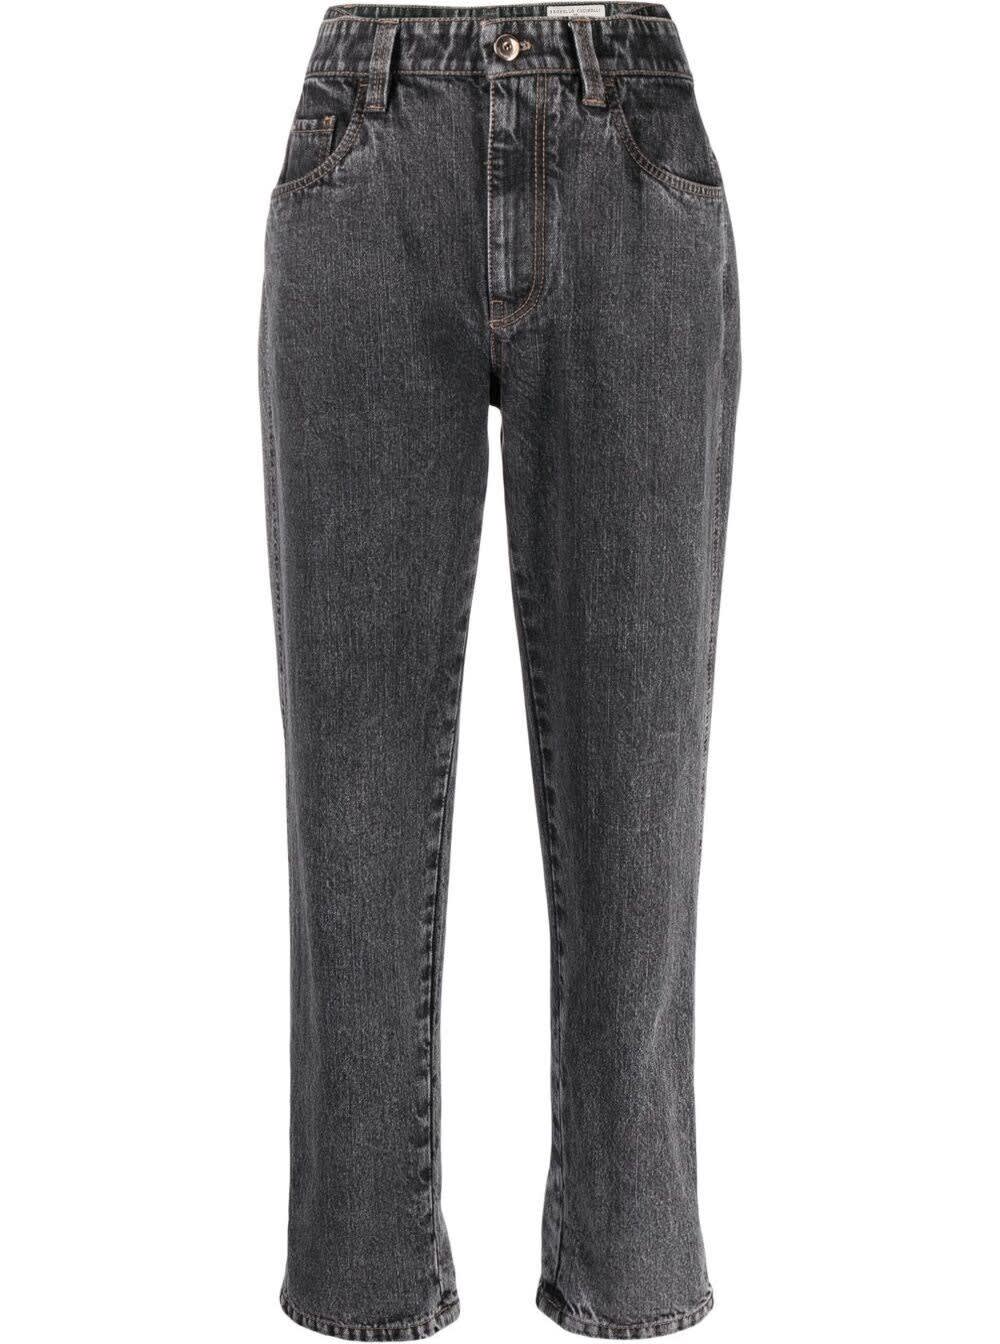 Brunello Cucinelli High Waisted Grey Denim Jeans